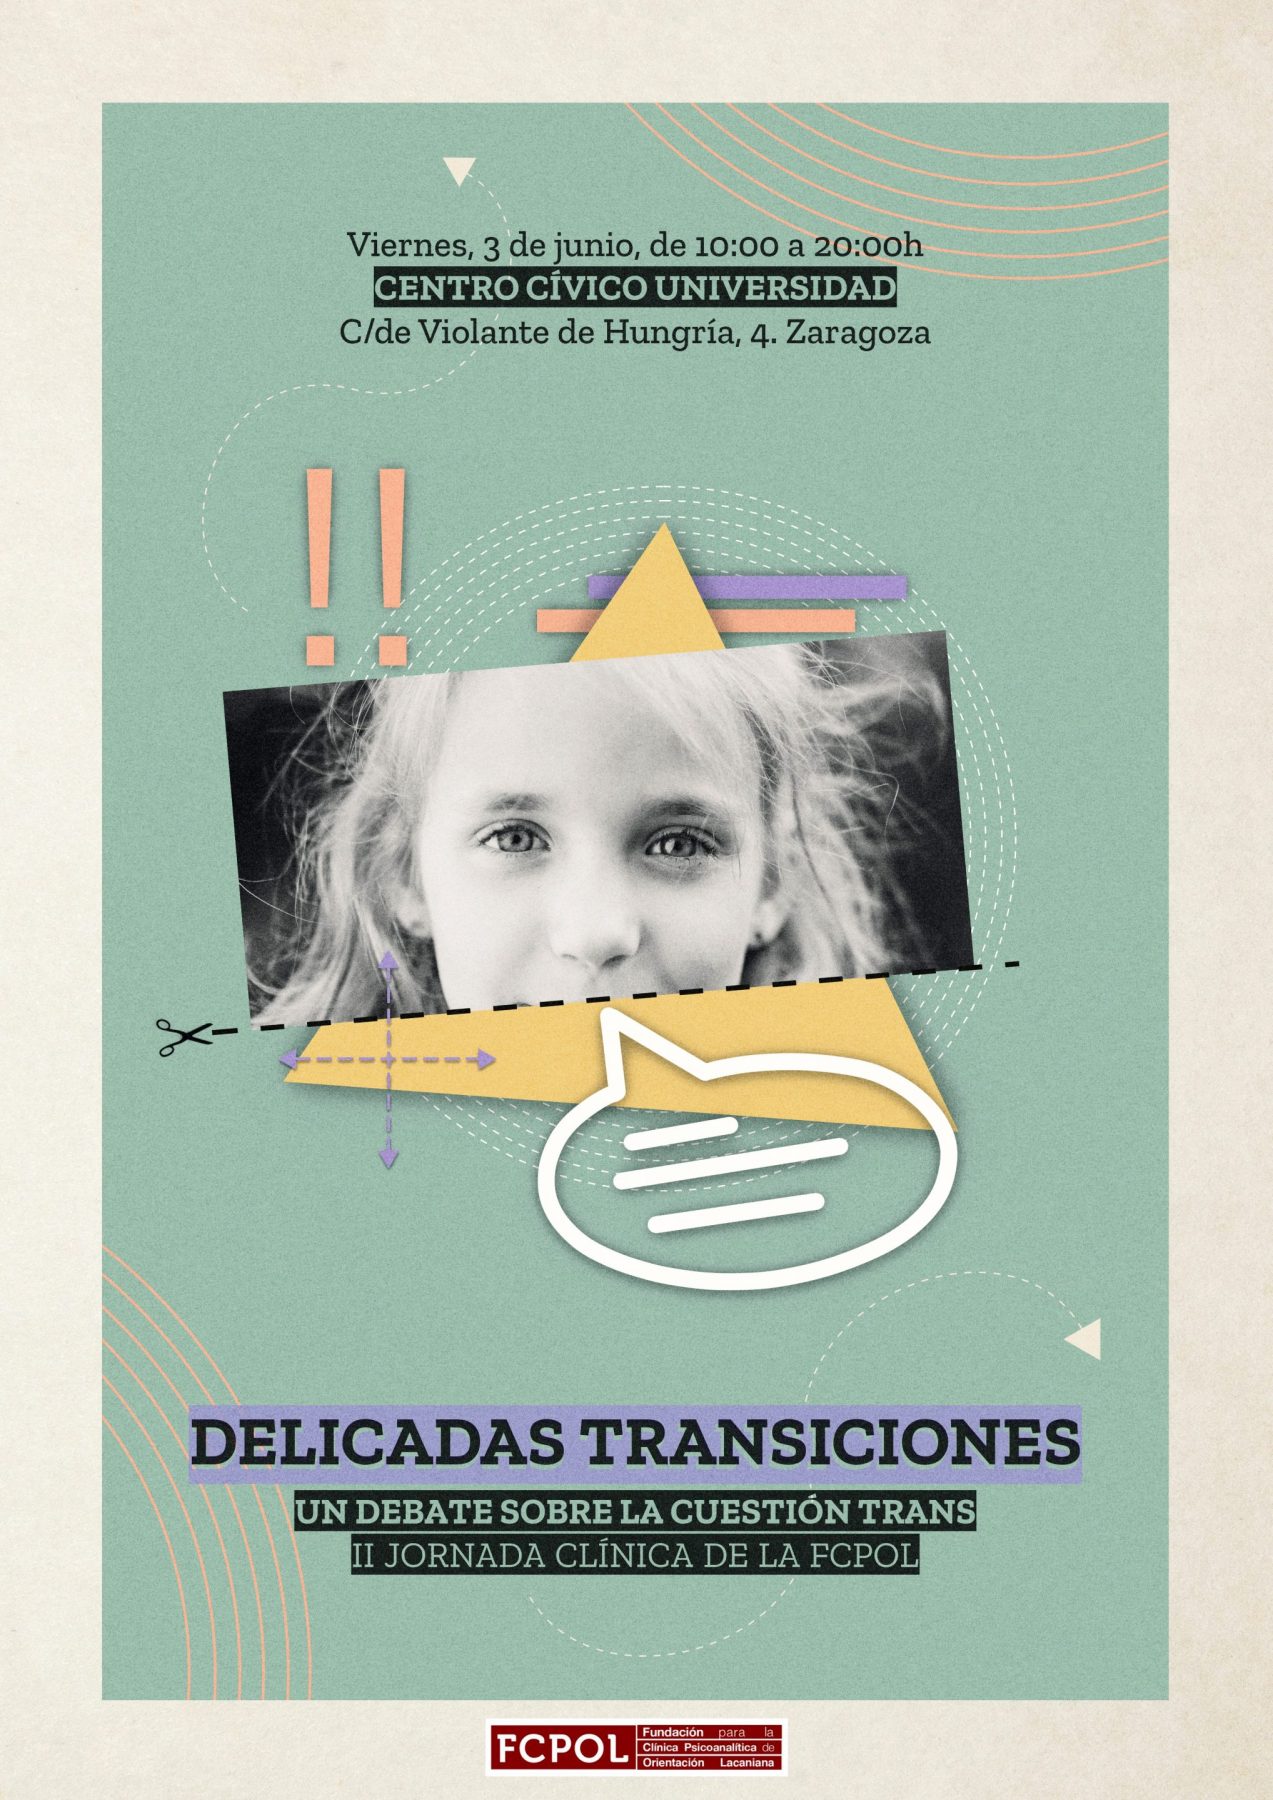 II Jornada Clínica de la FCPOL: “Delicadas transiciones. Un debate sobre la cuestión trans”. Reseña por Julieta Miguélez. ￼￼